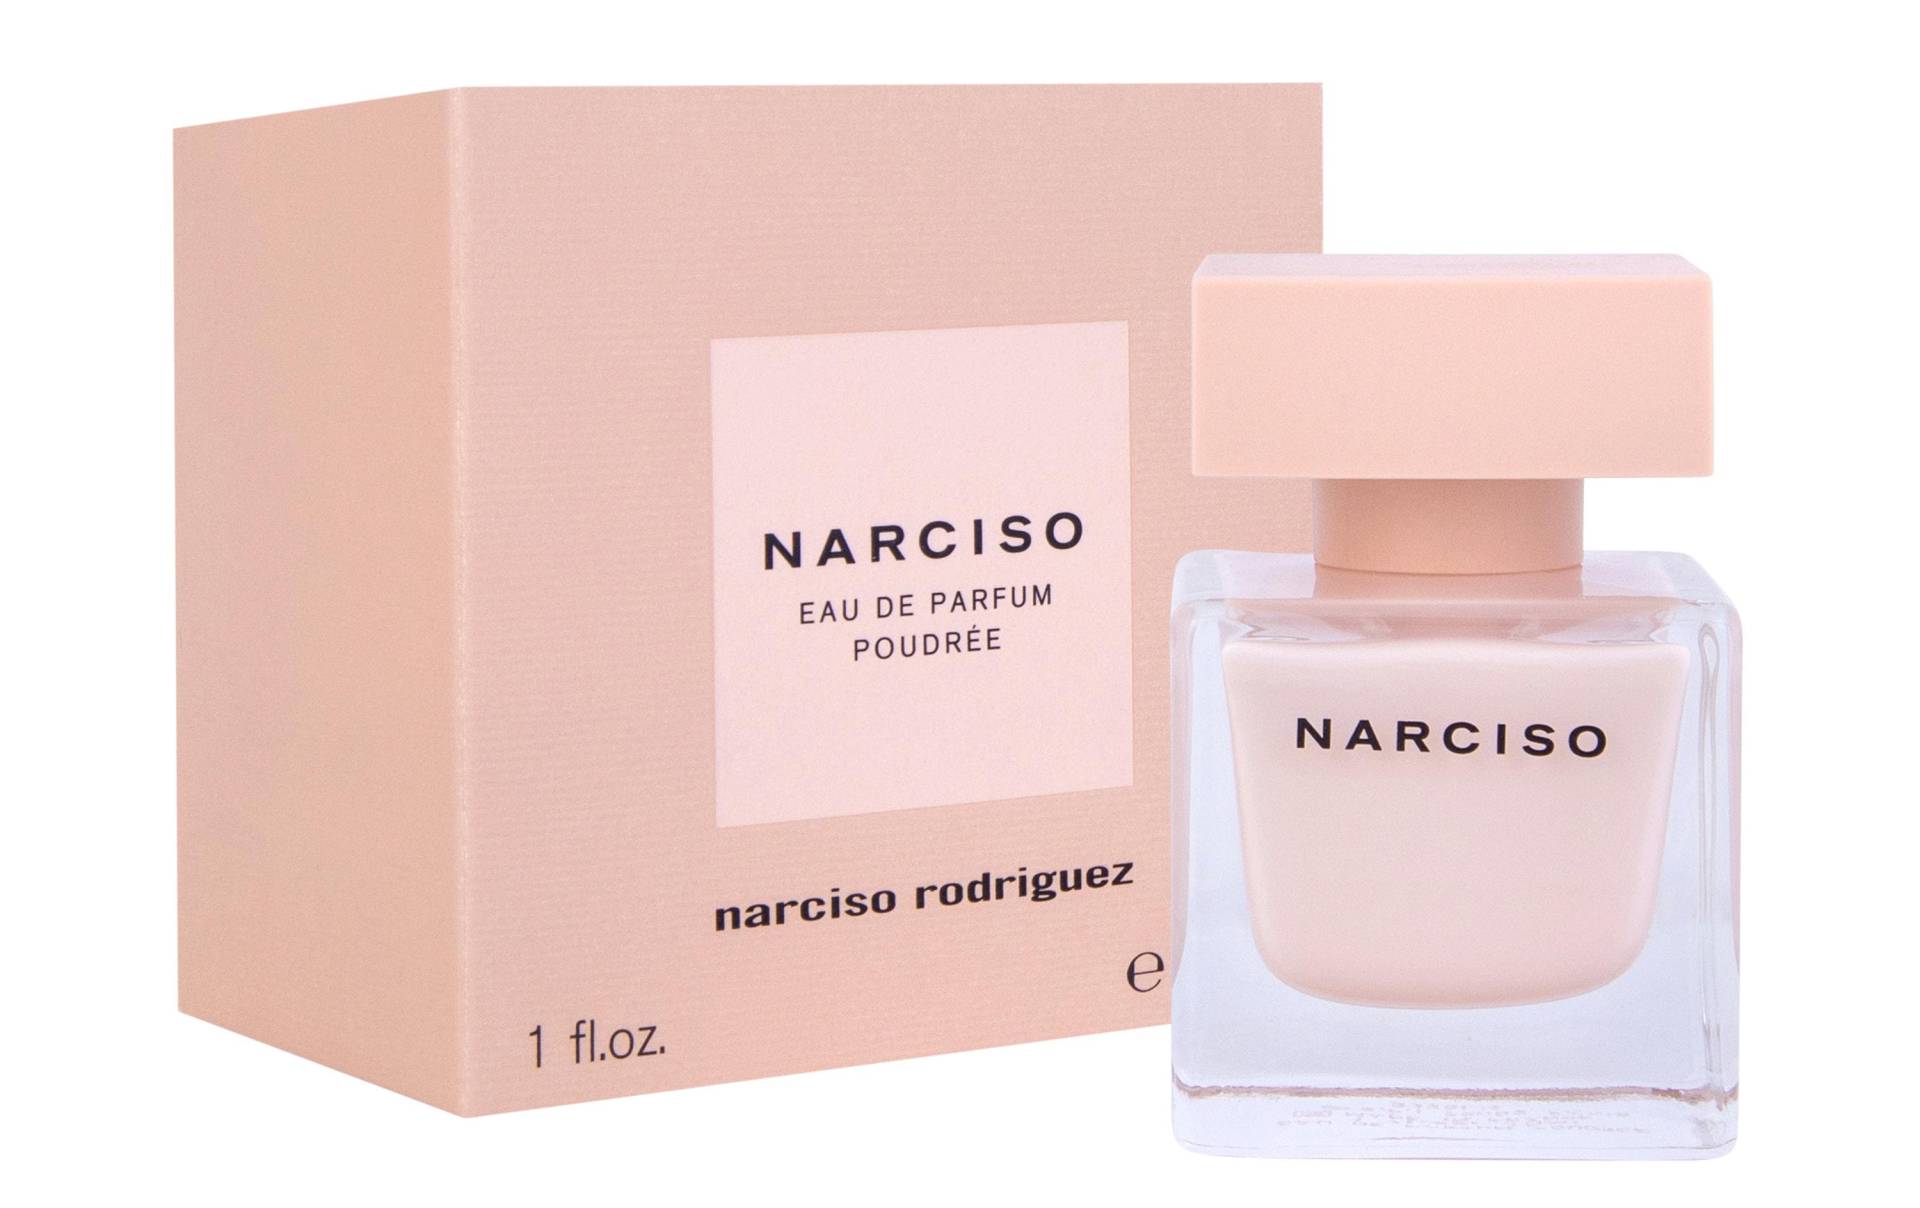 narciso rodriguez Eau de Parfum »Narciso Poudrée 30 ml« von narciso rodriguez